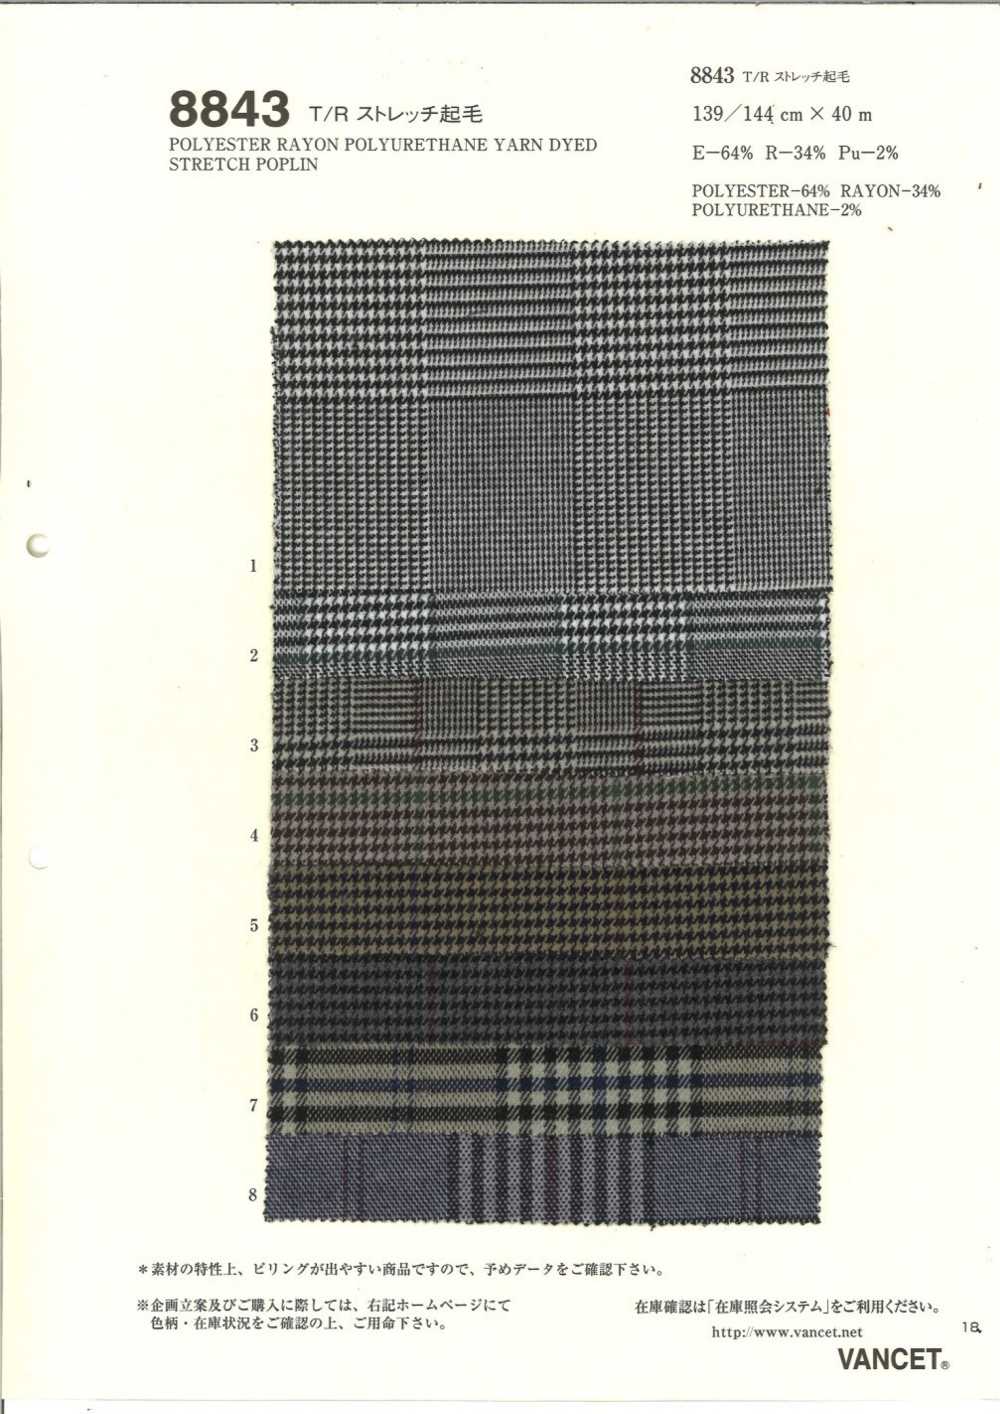 8843 T/R Estiramiento Difuso[Fabrica Textil] VANCET